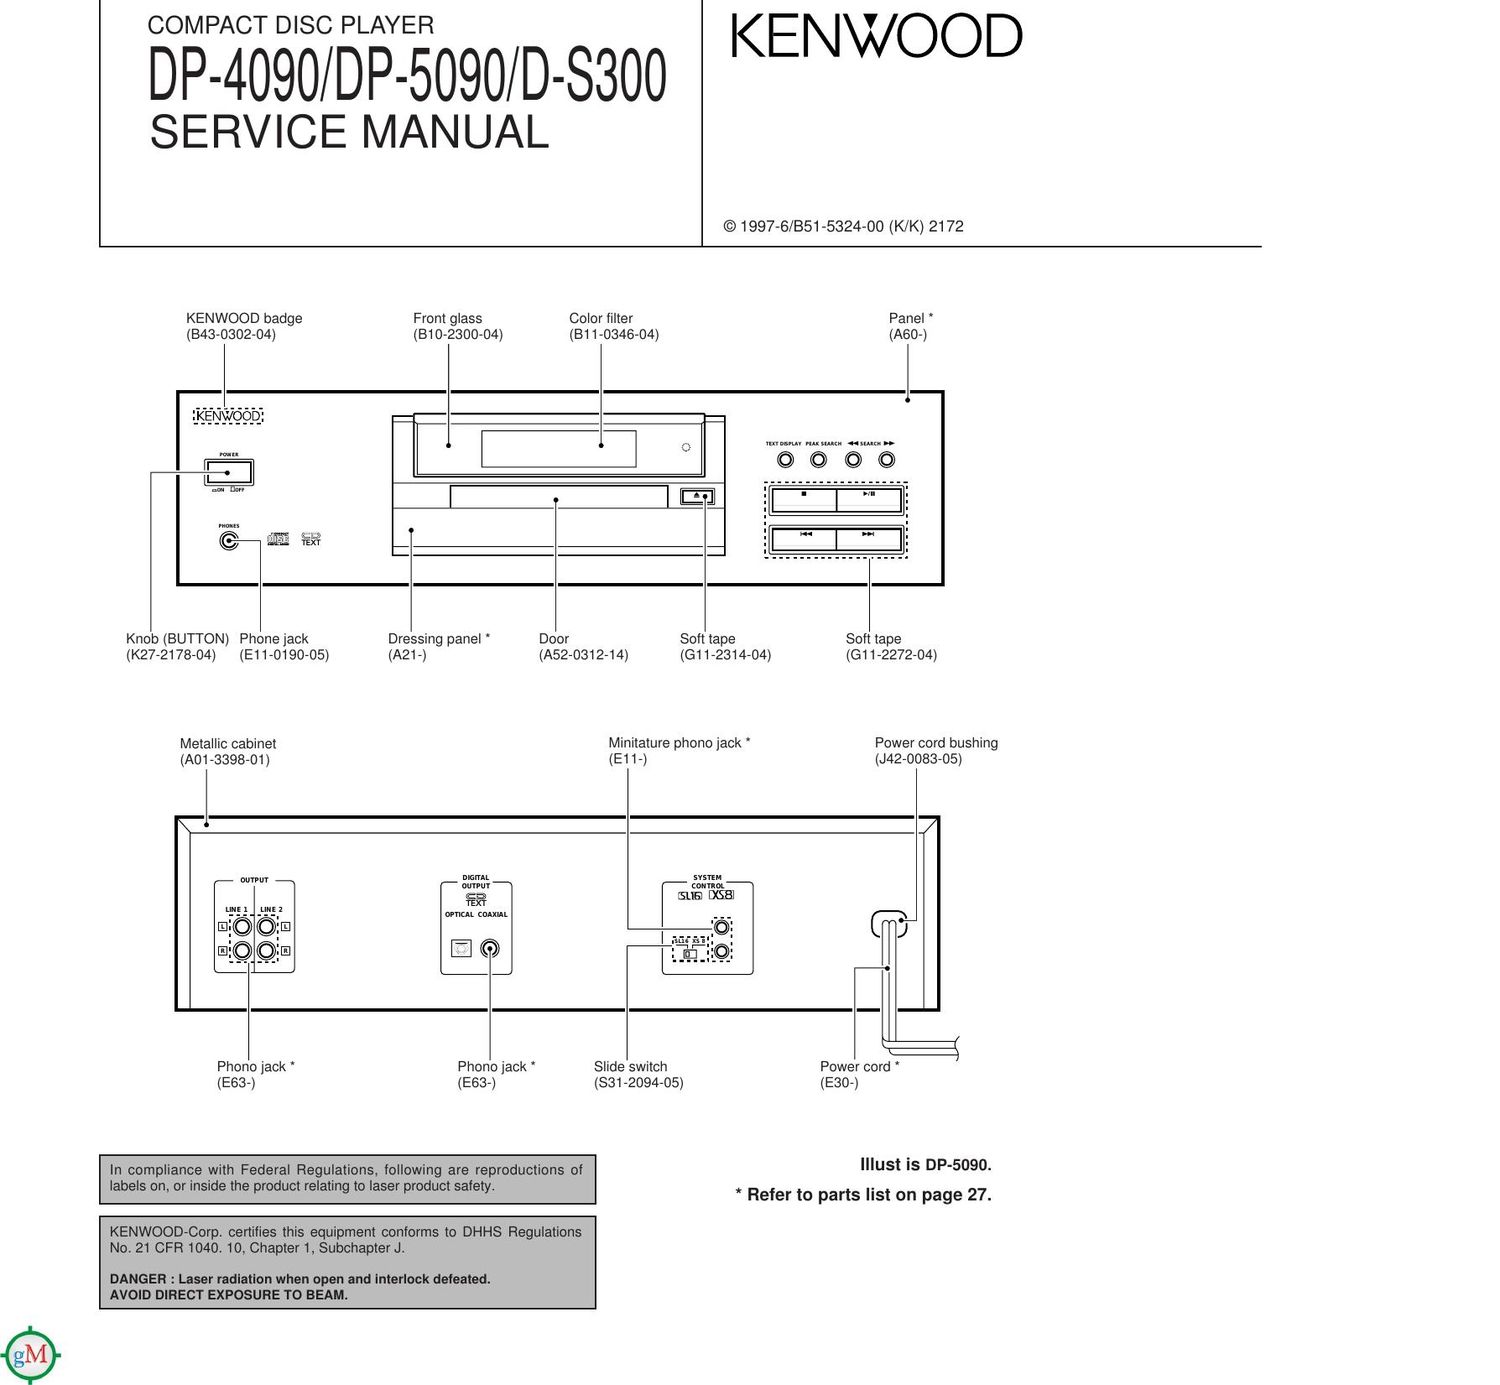 Kenwood DP 4090 Service Manual